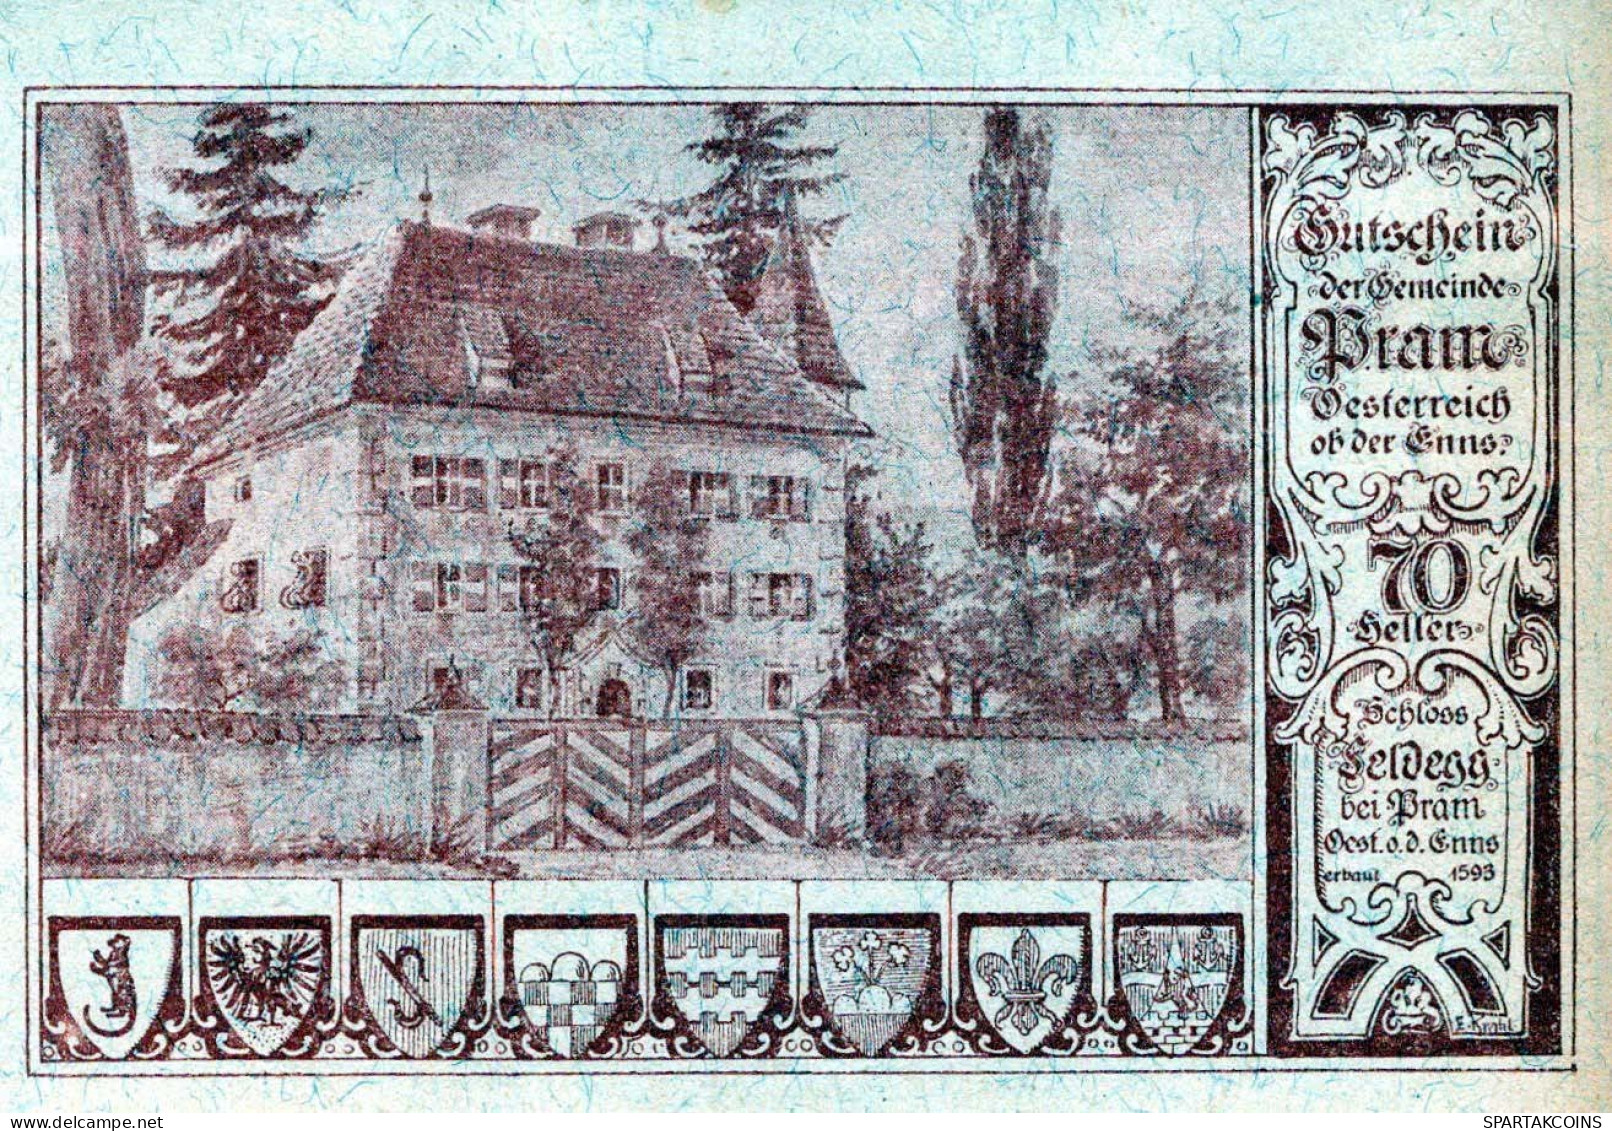 70 HELLER 1920 Stadt PRAM Oberösterreich Österreich UNC Österreich Notgeld Banknote #PH420 - [11] Emisiones Locales